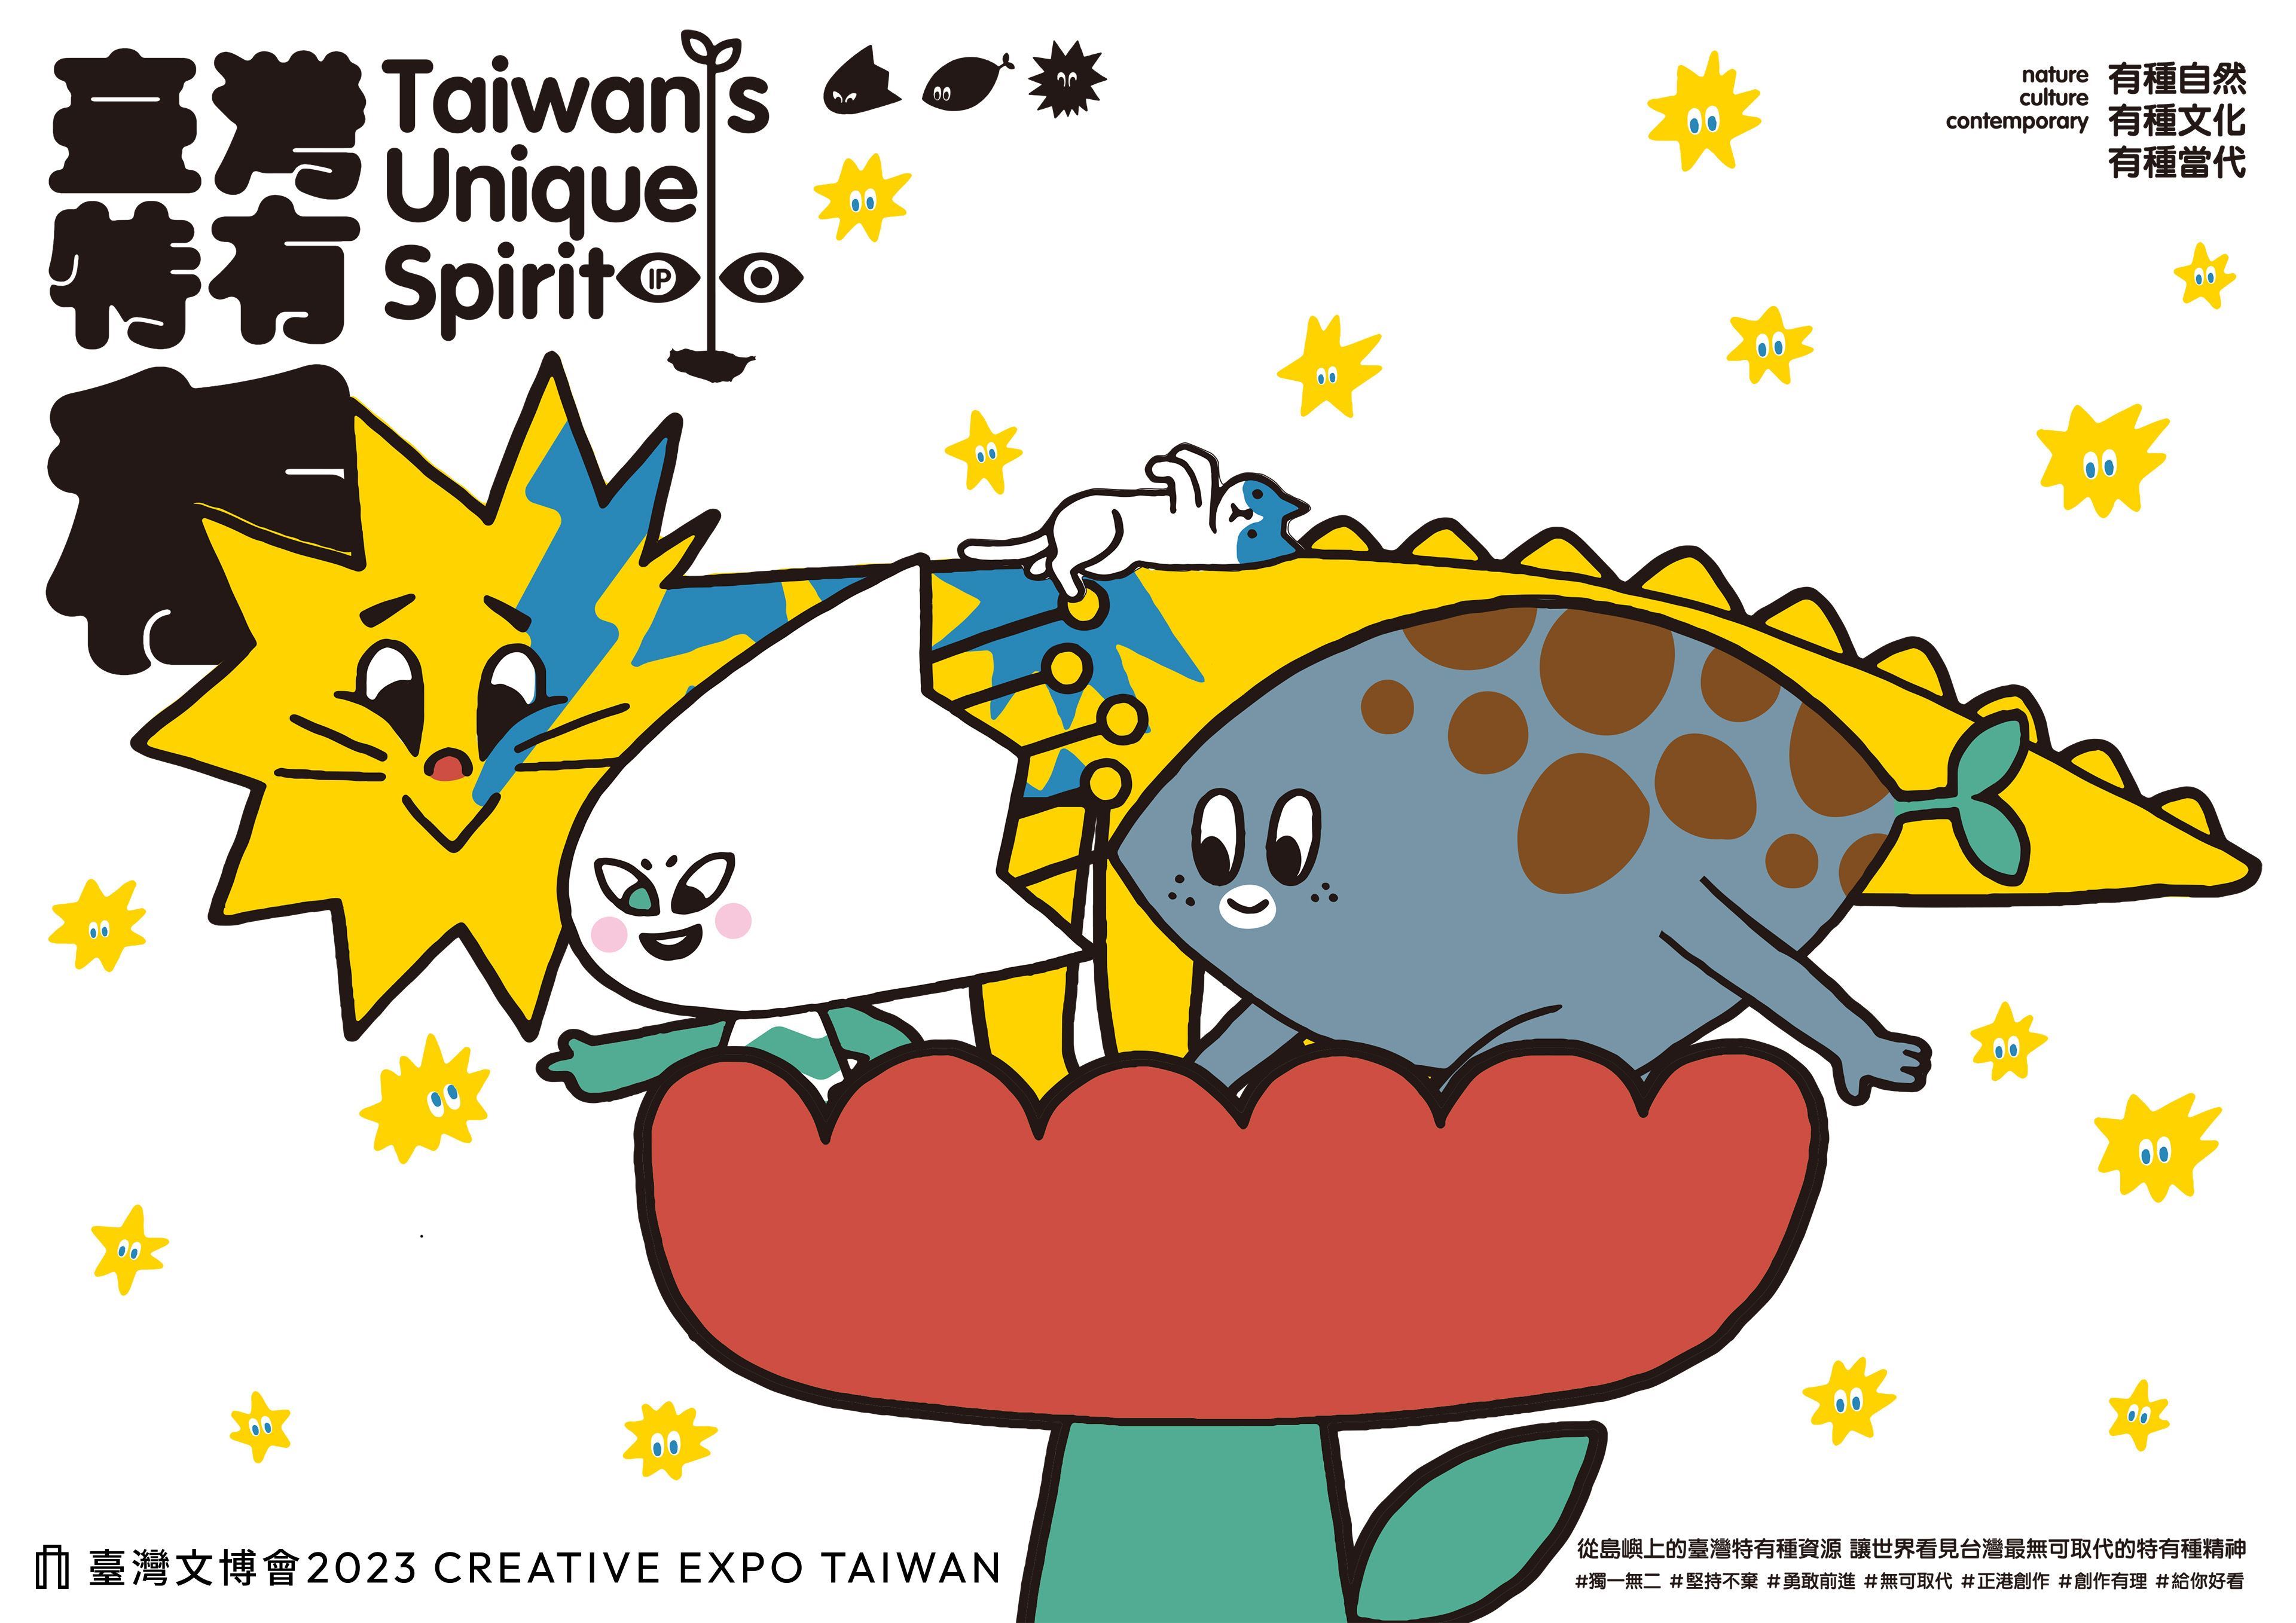 La Creative Expo Taiwan 2023 habilita por primera vez un pabellón de propiedad intelectual, dando testimonio del buen desempeño de los ilustradores taiwaneses